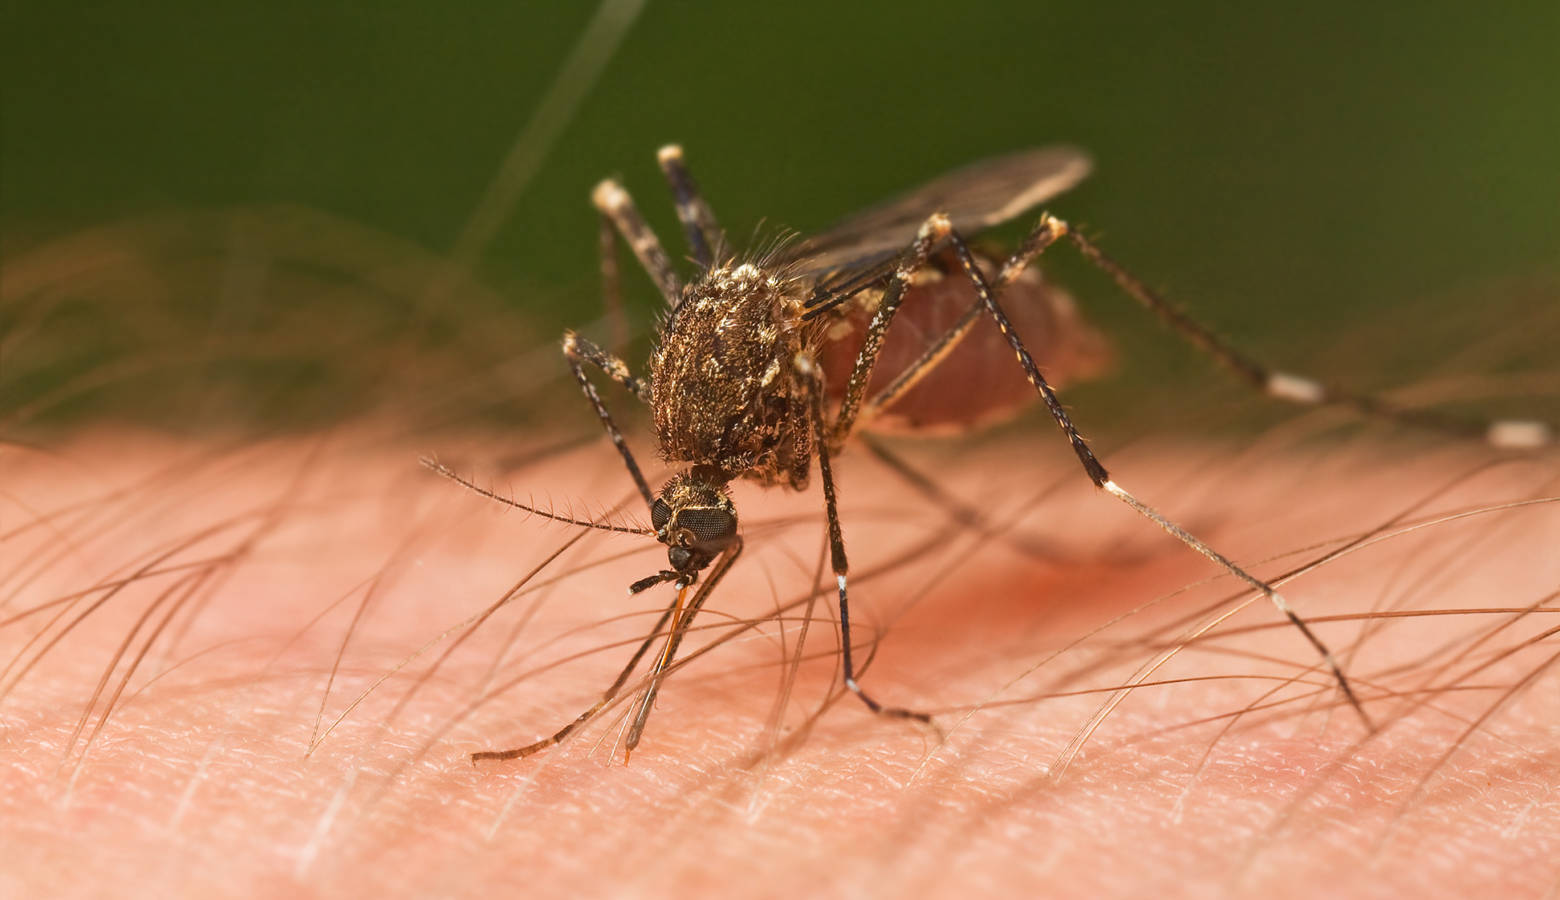 A mosquito biting a person in Tasmania, Australia, 2009. (JJ Harrison/Wikimedia Commons)